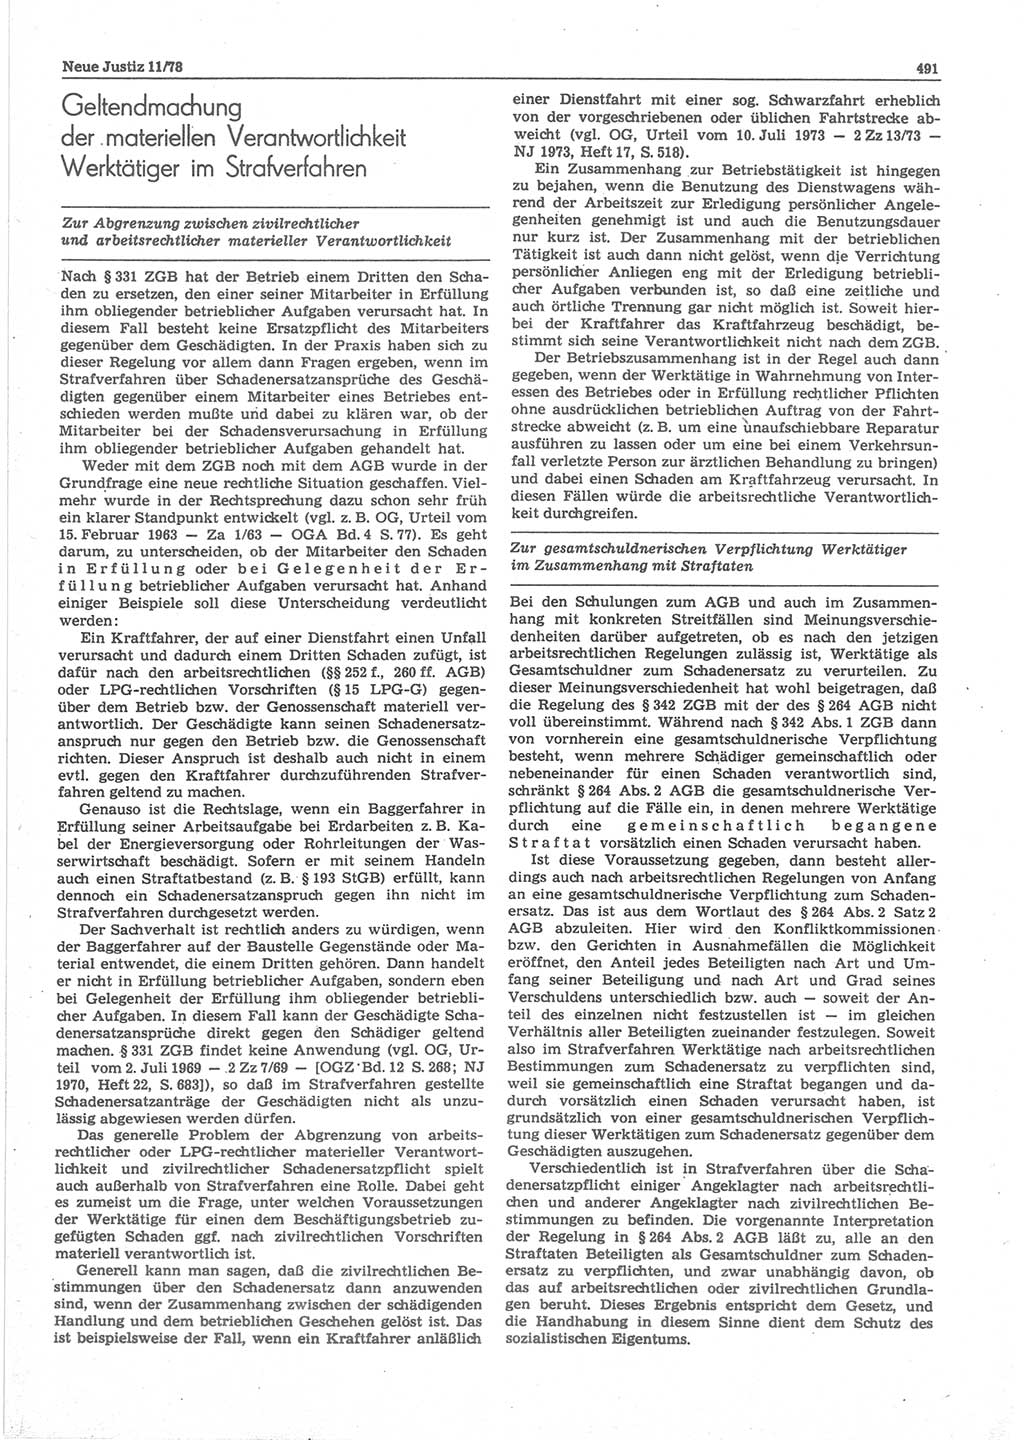 Neue Justiz (NJ), Zeitschrift für sozialistisches Recht und Gesetzlichkeit [Deutsche Demokratische Republik (DDR)], 32. Jahrgang 1978, Seite 491 (NJ DDR 1978, S. 491)